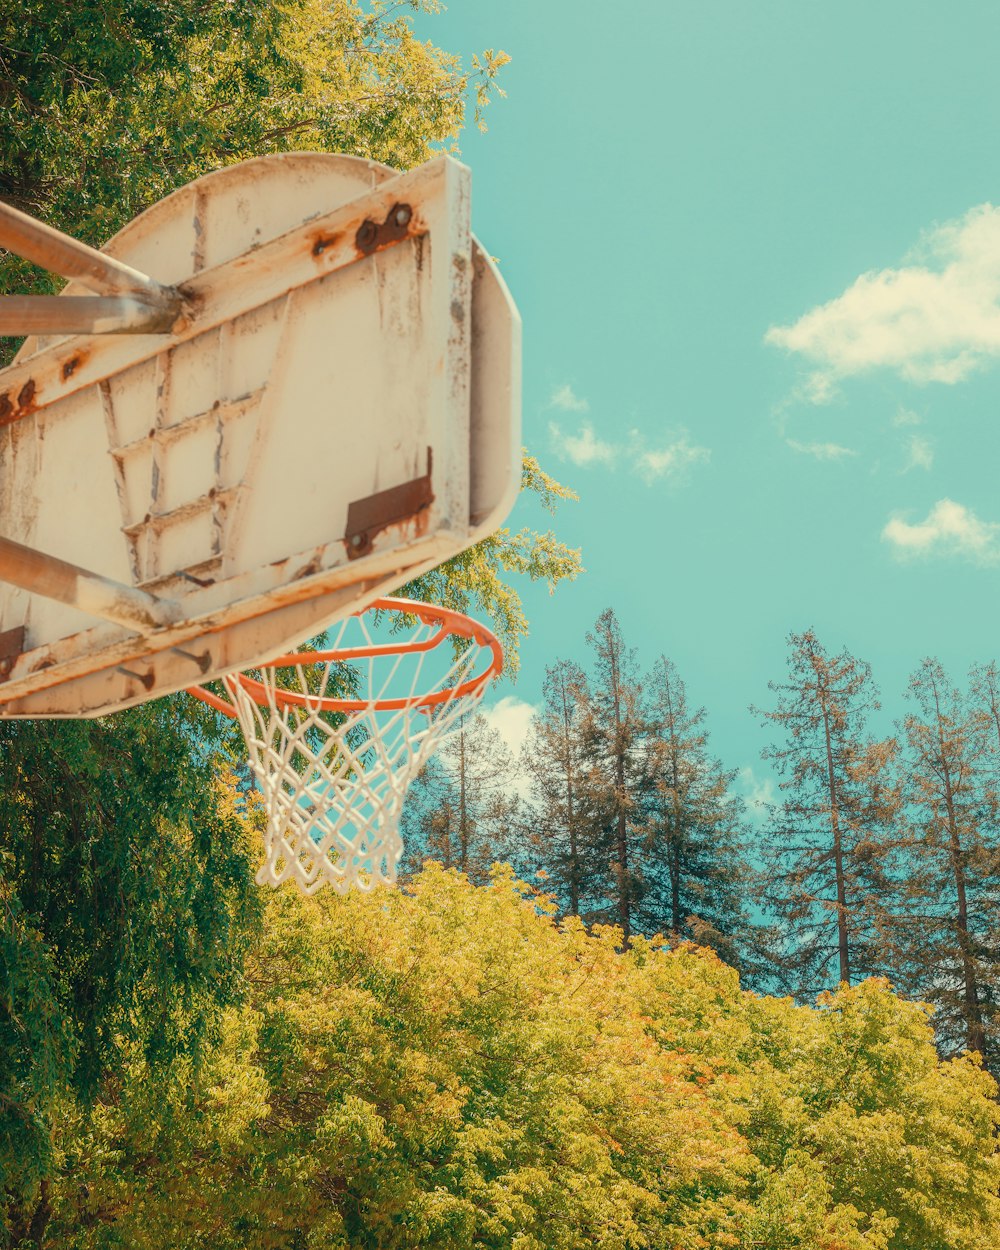 背景に木々のある古いバスケットボールのフープ